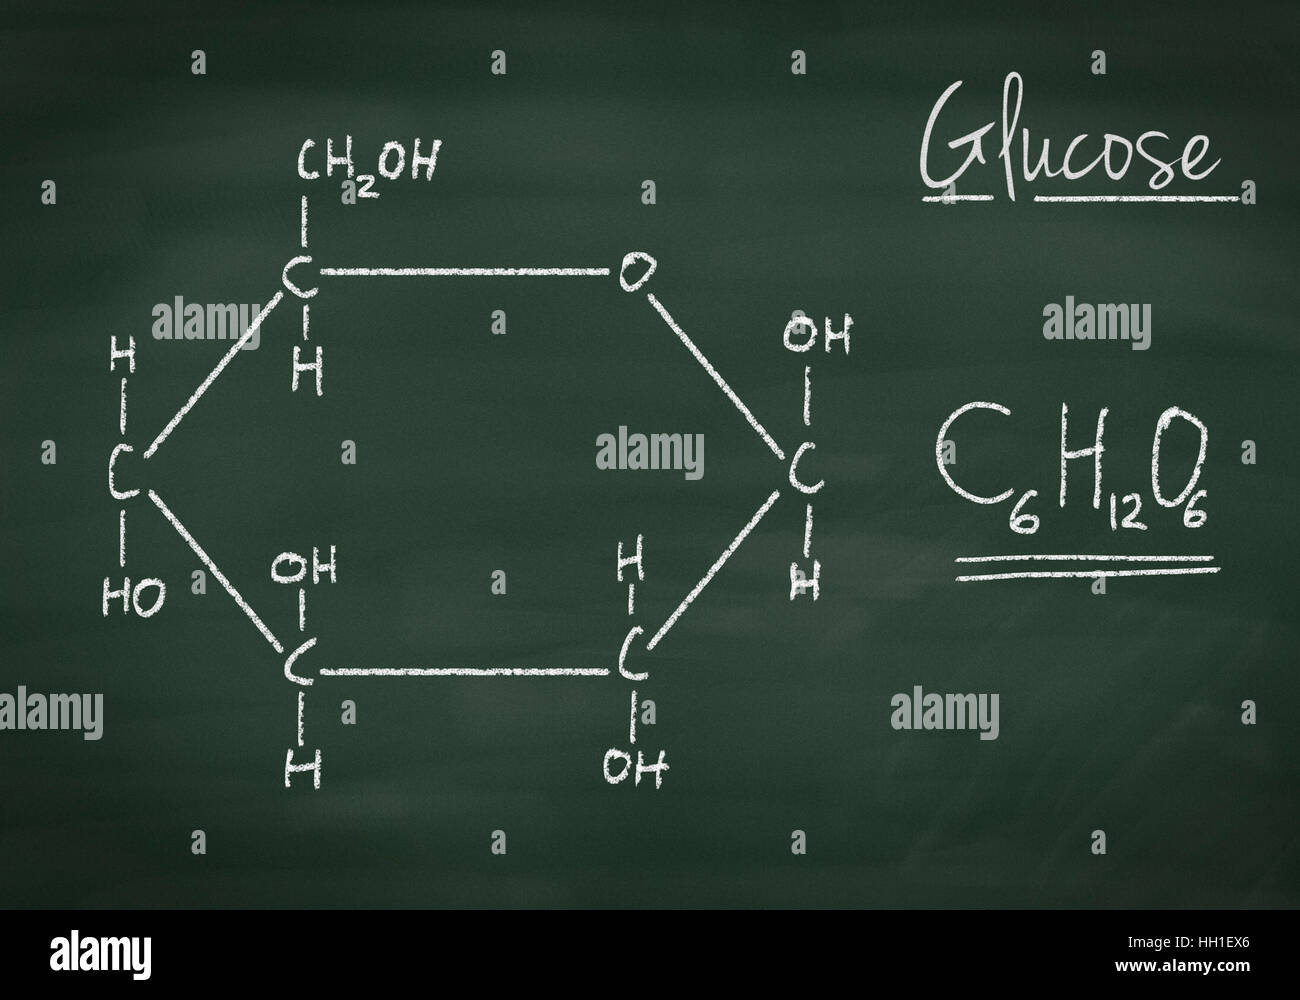 Chemische Formel für Glukose auf einer Kreidetafel Stockfoto